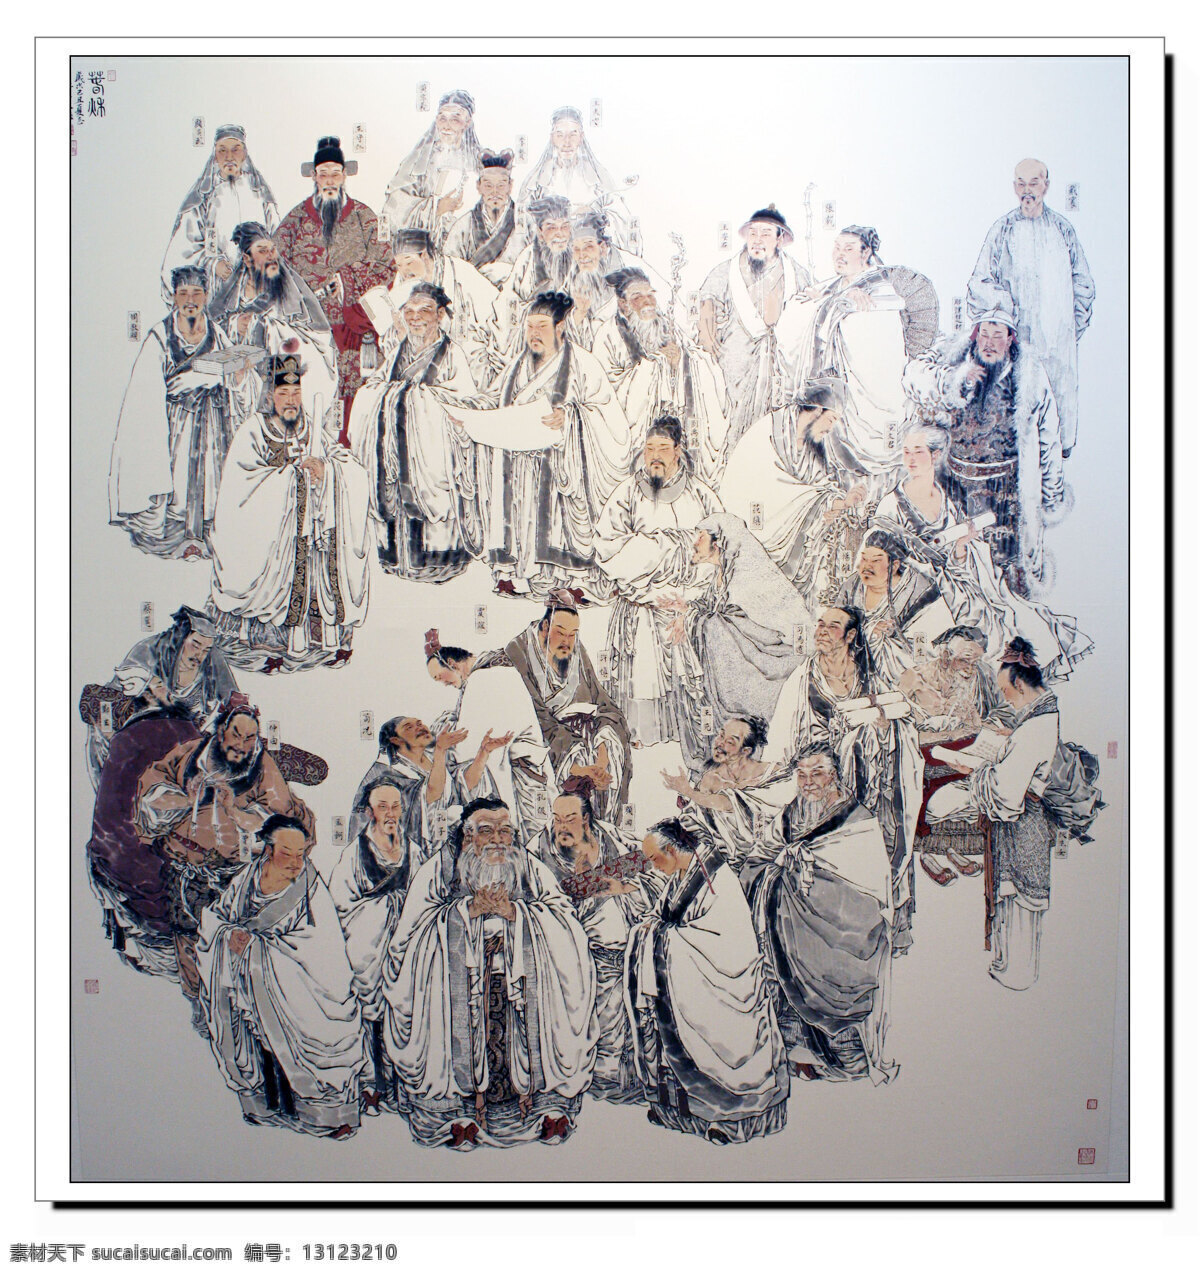 孔子弟子 孔夫子 老师 学生 众多 儒家 工笔画 绘画书法 文化艺术